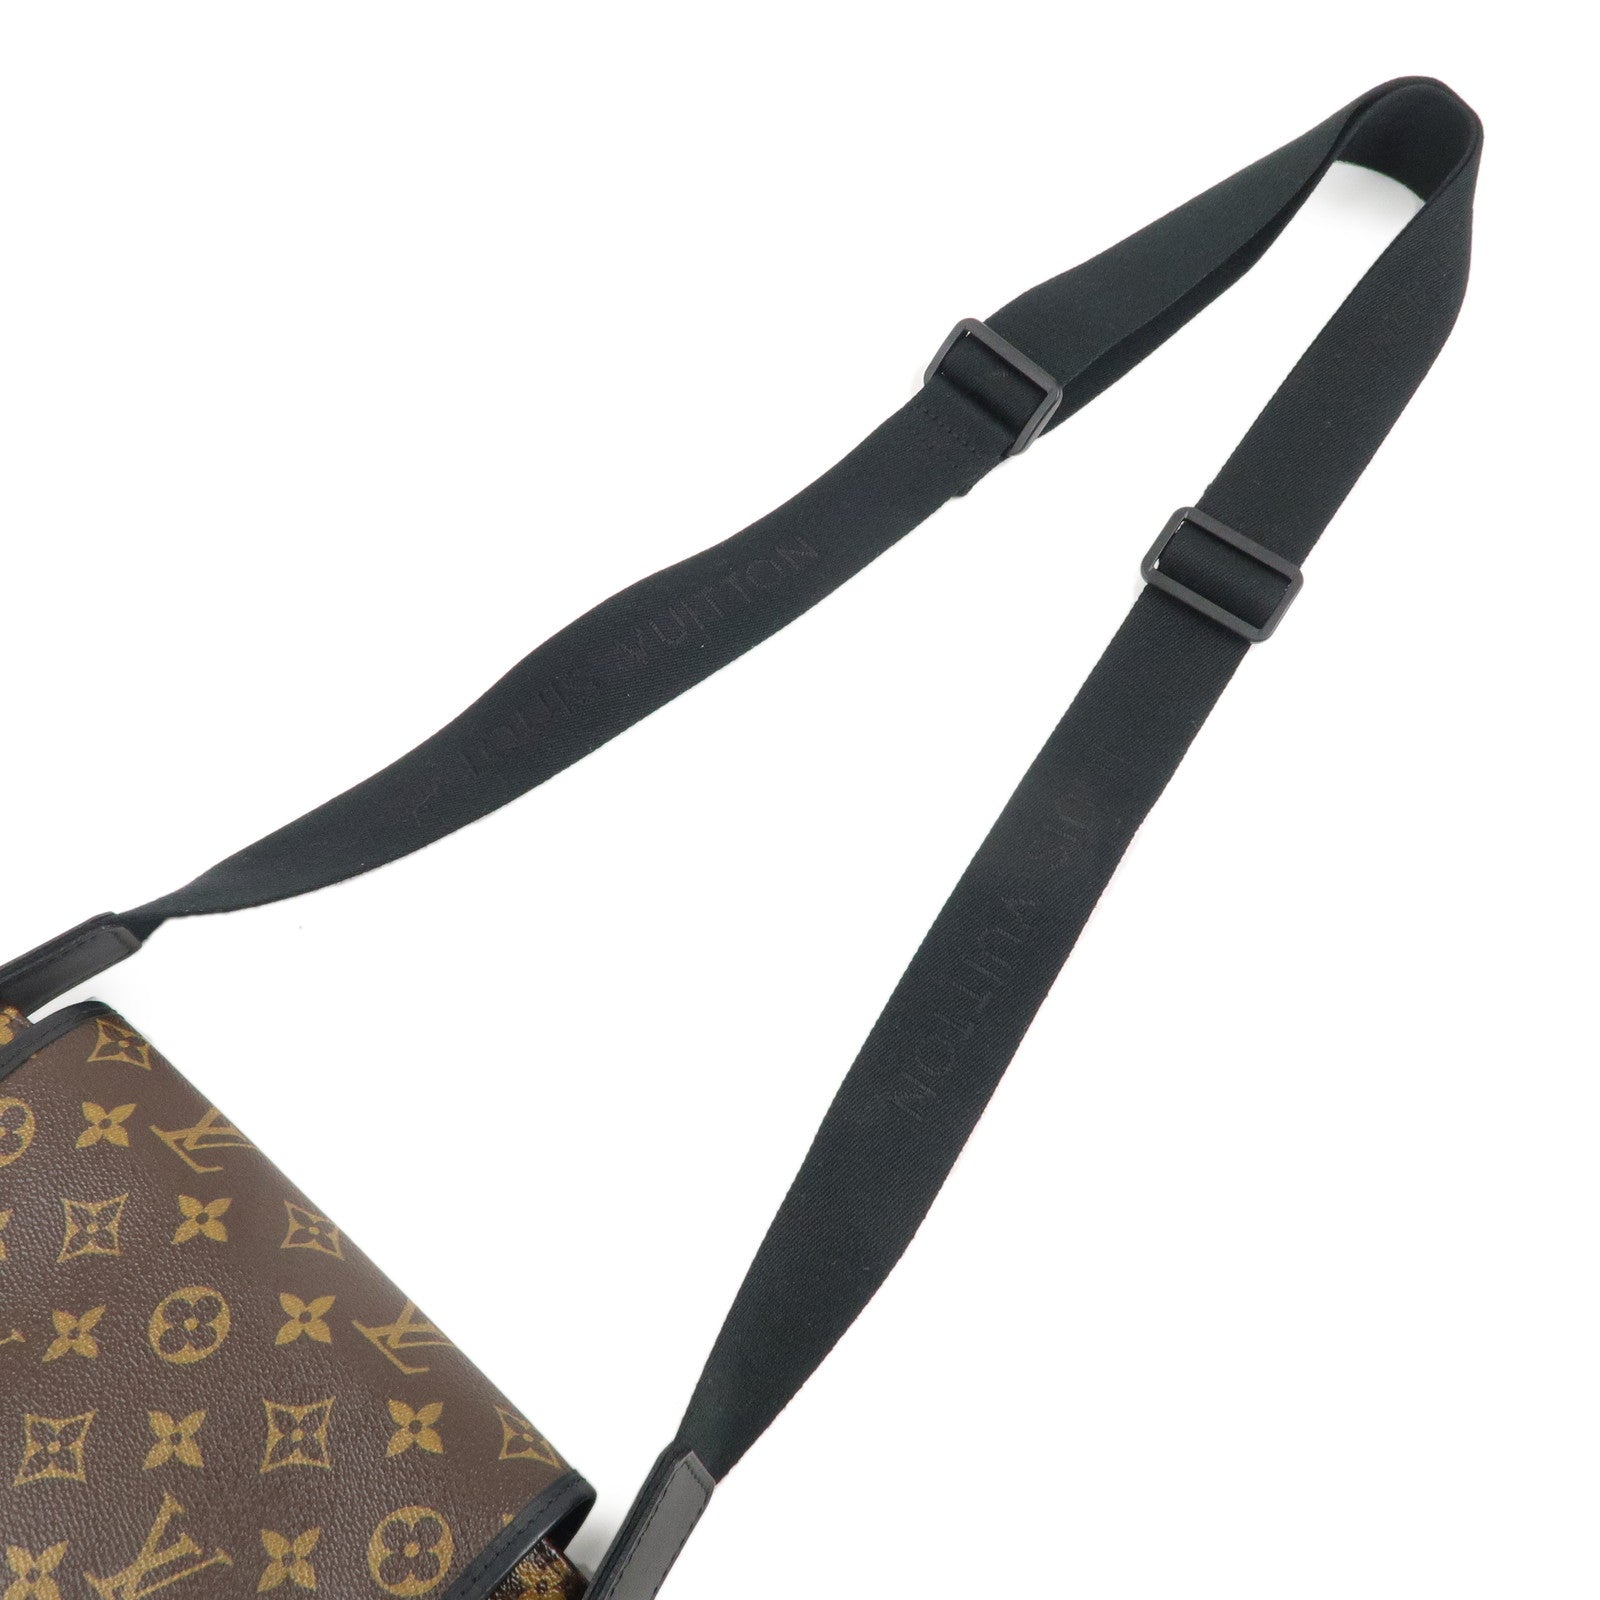 Louis Vuitton Monogram Macassar Bass PM Messenger Bag, Louis Vuitton  Handbags